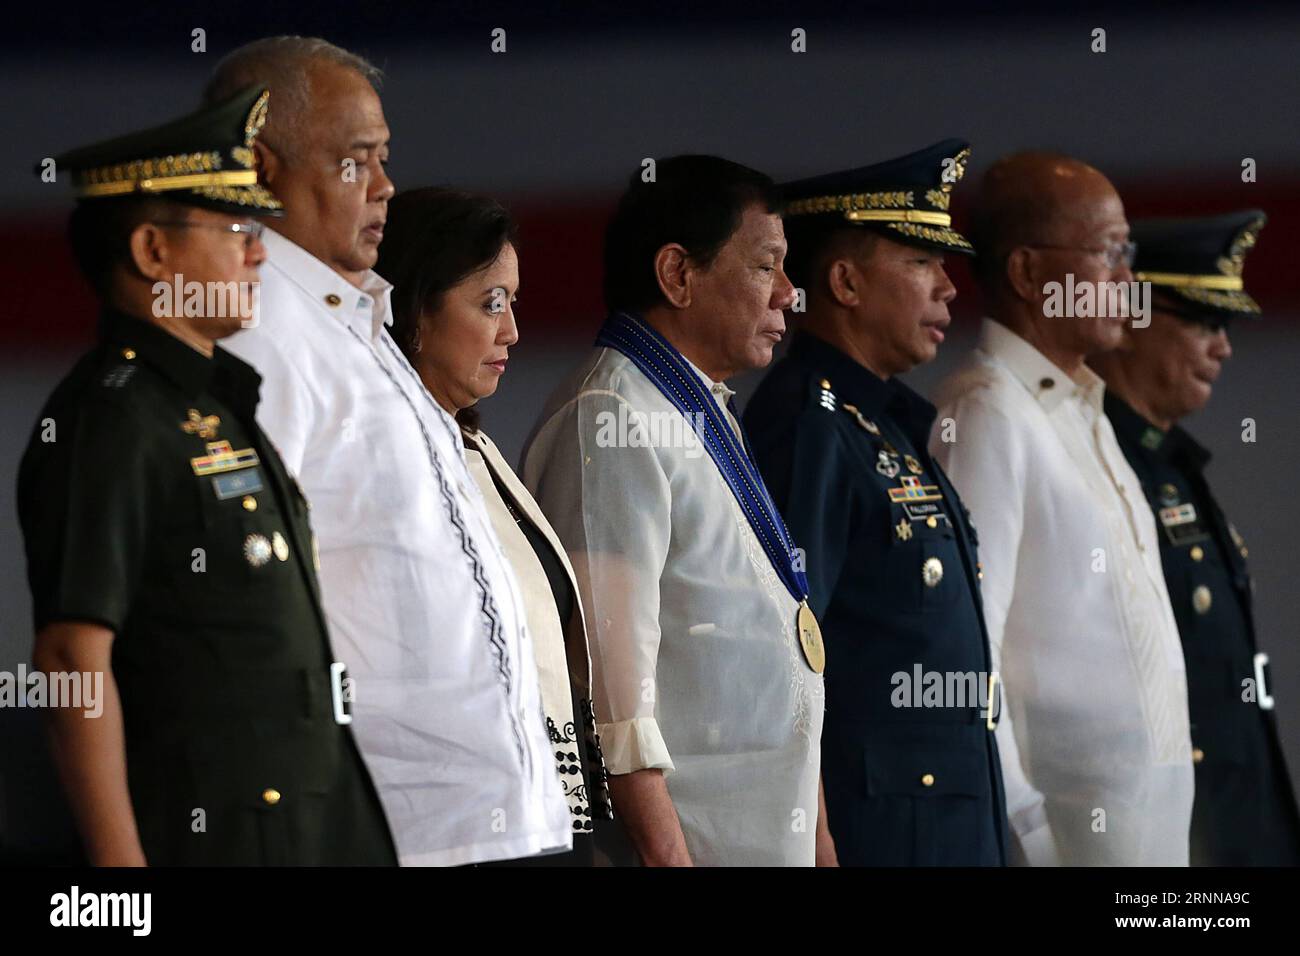 (170704) -- PROVINZ PAMPANGA, 4. Juli 2017 -- Präsident der Philippinen Rodrigo Duterte (C) nimmt am 70. Jahrestag der philippinischen Luftwaffe (PAF) auf dem Clark Air Base in der Provinz Pampanga, Philippinen, 4. Juli 2017, Teil. ) (dtf) PHILIPPINEN-PAMPANGA-AIR FORCE-70. JAHRESTAG ROUELLExUMALI PUBLICATIONxNOTxINxCHN Pampanga Province 4. Juli 2017 Philippinen Präsident Rodrigo Duterte C nimmt AM 70. Jahrestag der philippinischen Luftwaffe paf AUF DEM Clark Air Base in der Provinz Pampanga Teil die Philippinen 4. Juli 2017 dtf Philippinen PampangnixUmNATNNNNNATNali Air Force zum 70. Jahrestag Stockfoto